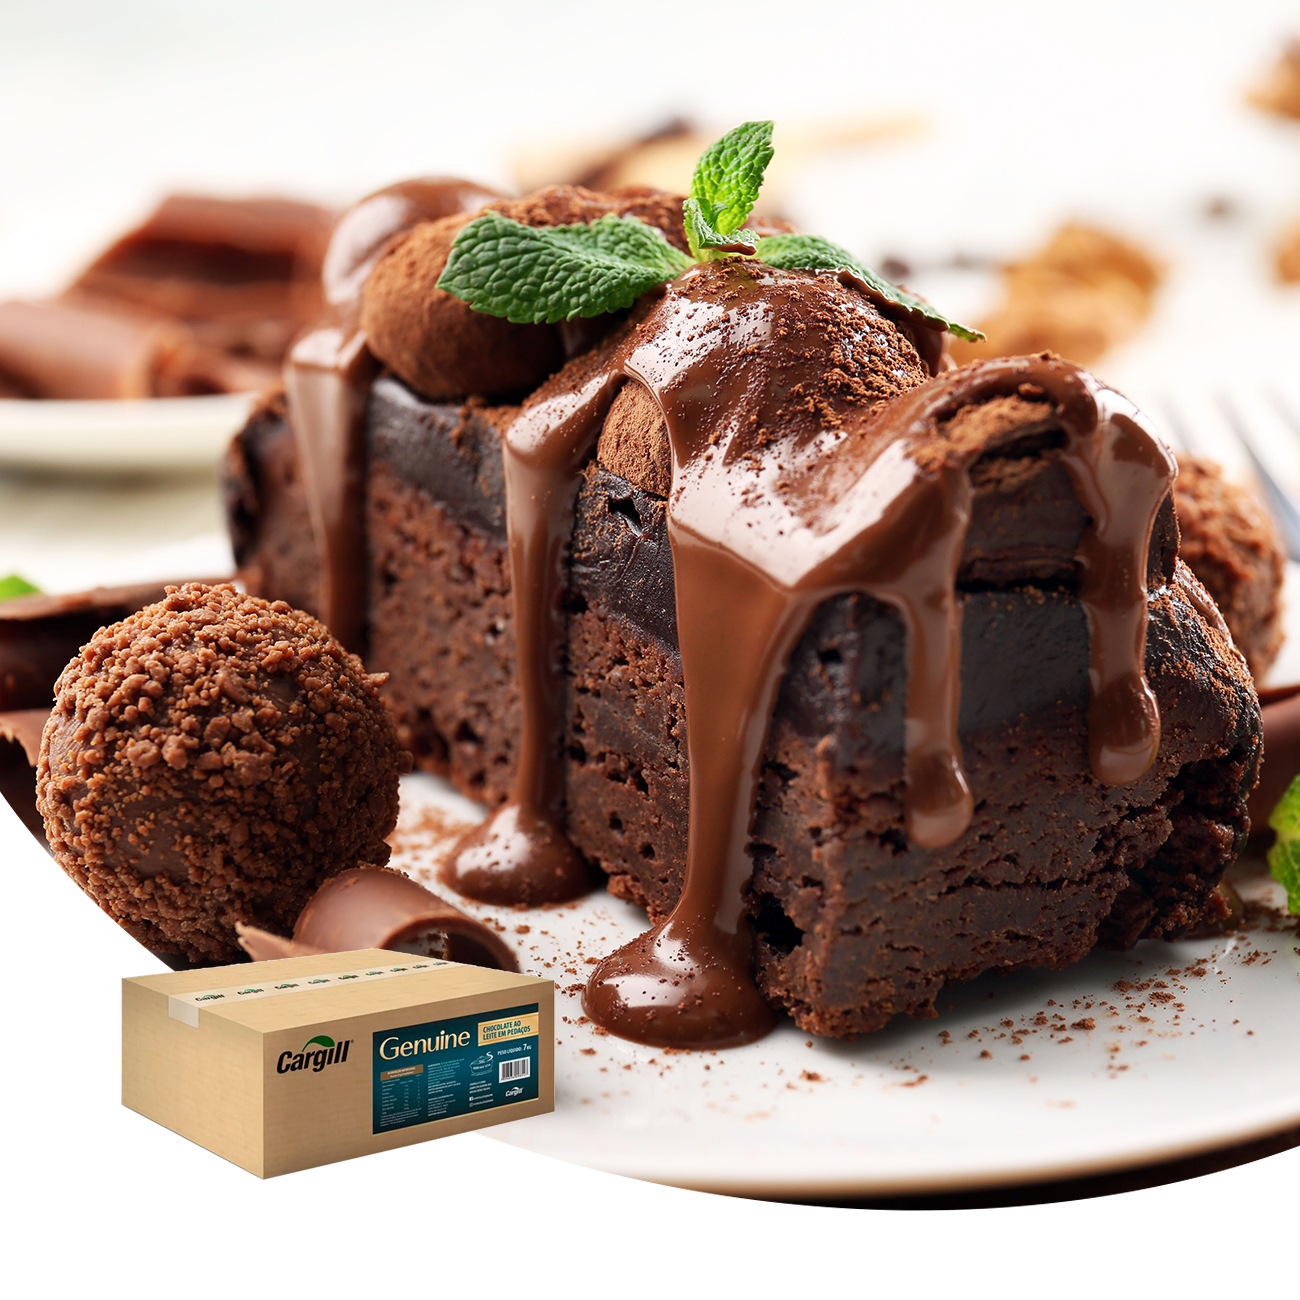 Cobertura de Chocolate em Raspas Cargill Genuine Kibbles ao Leite Caixa 7kg